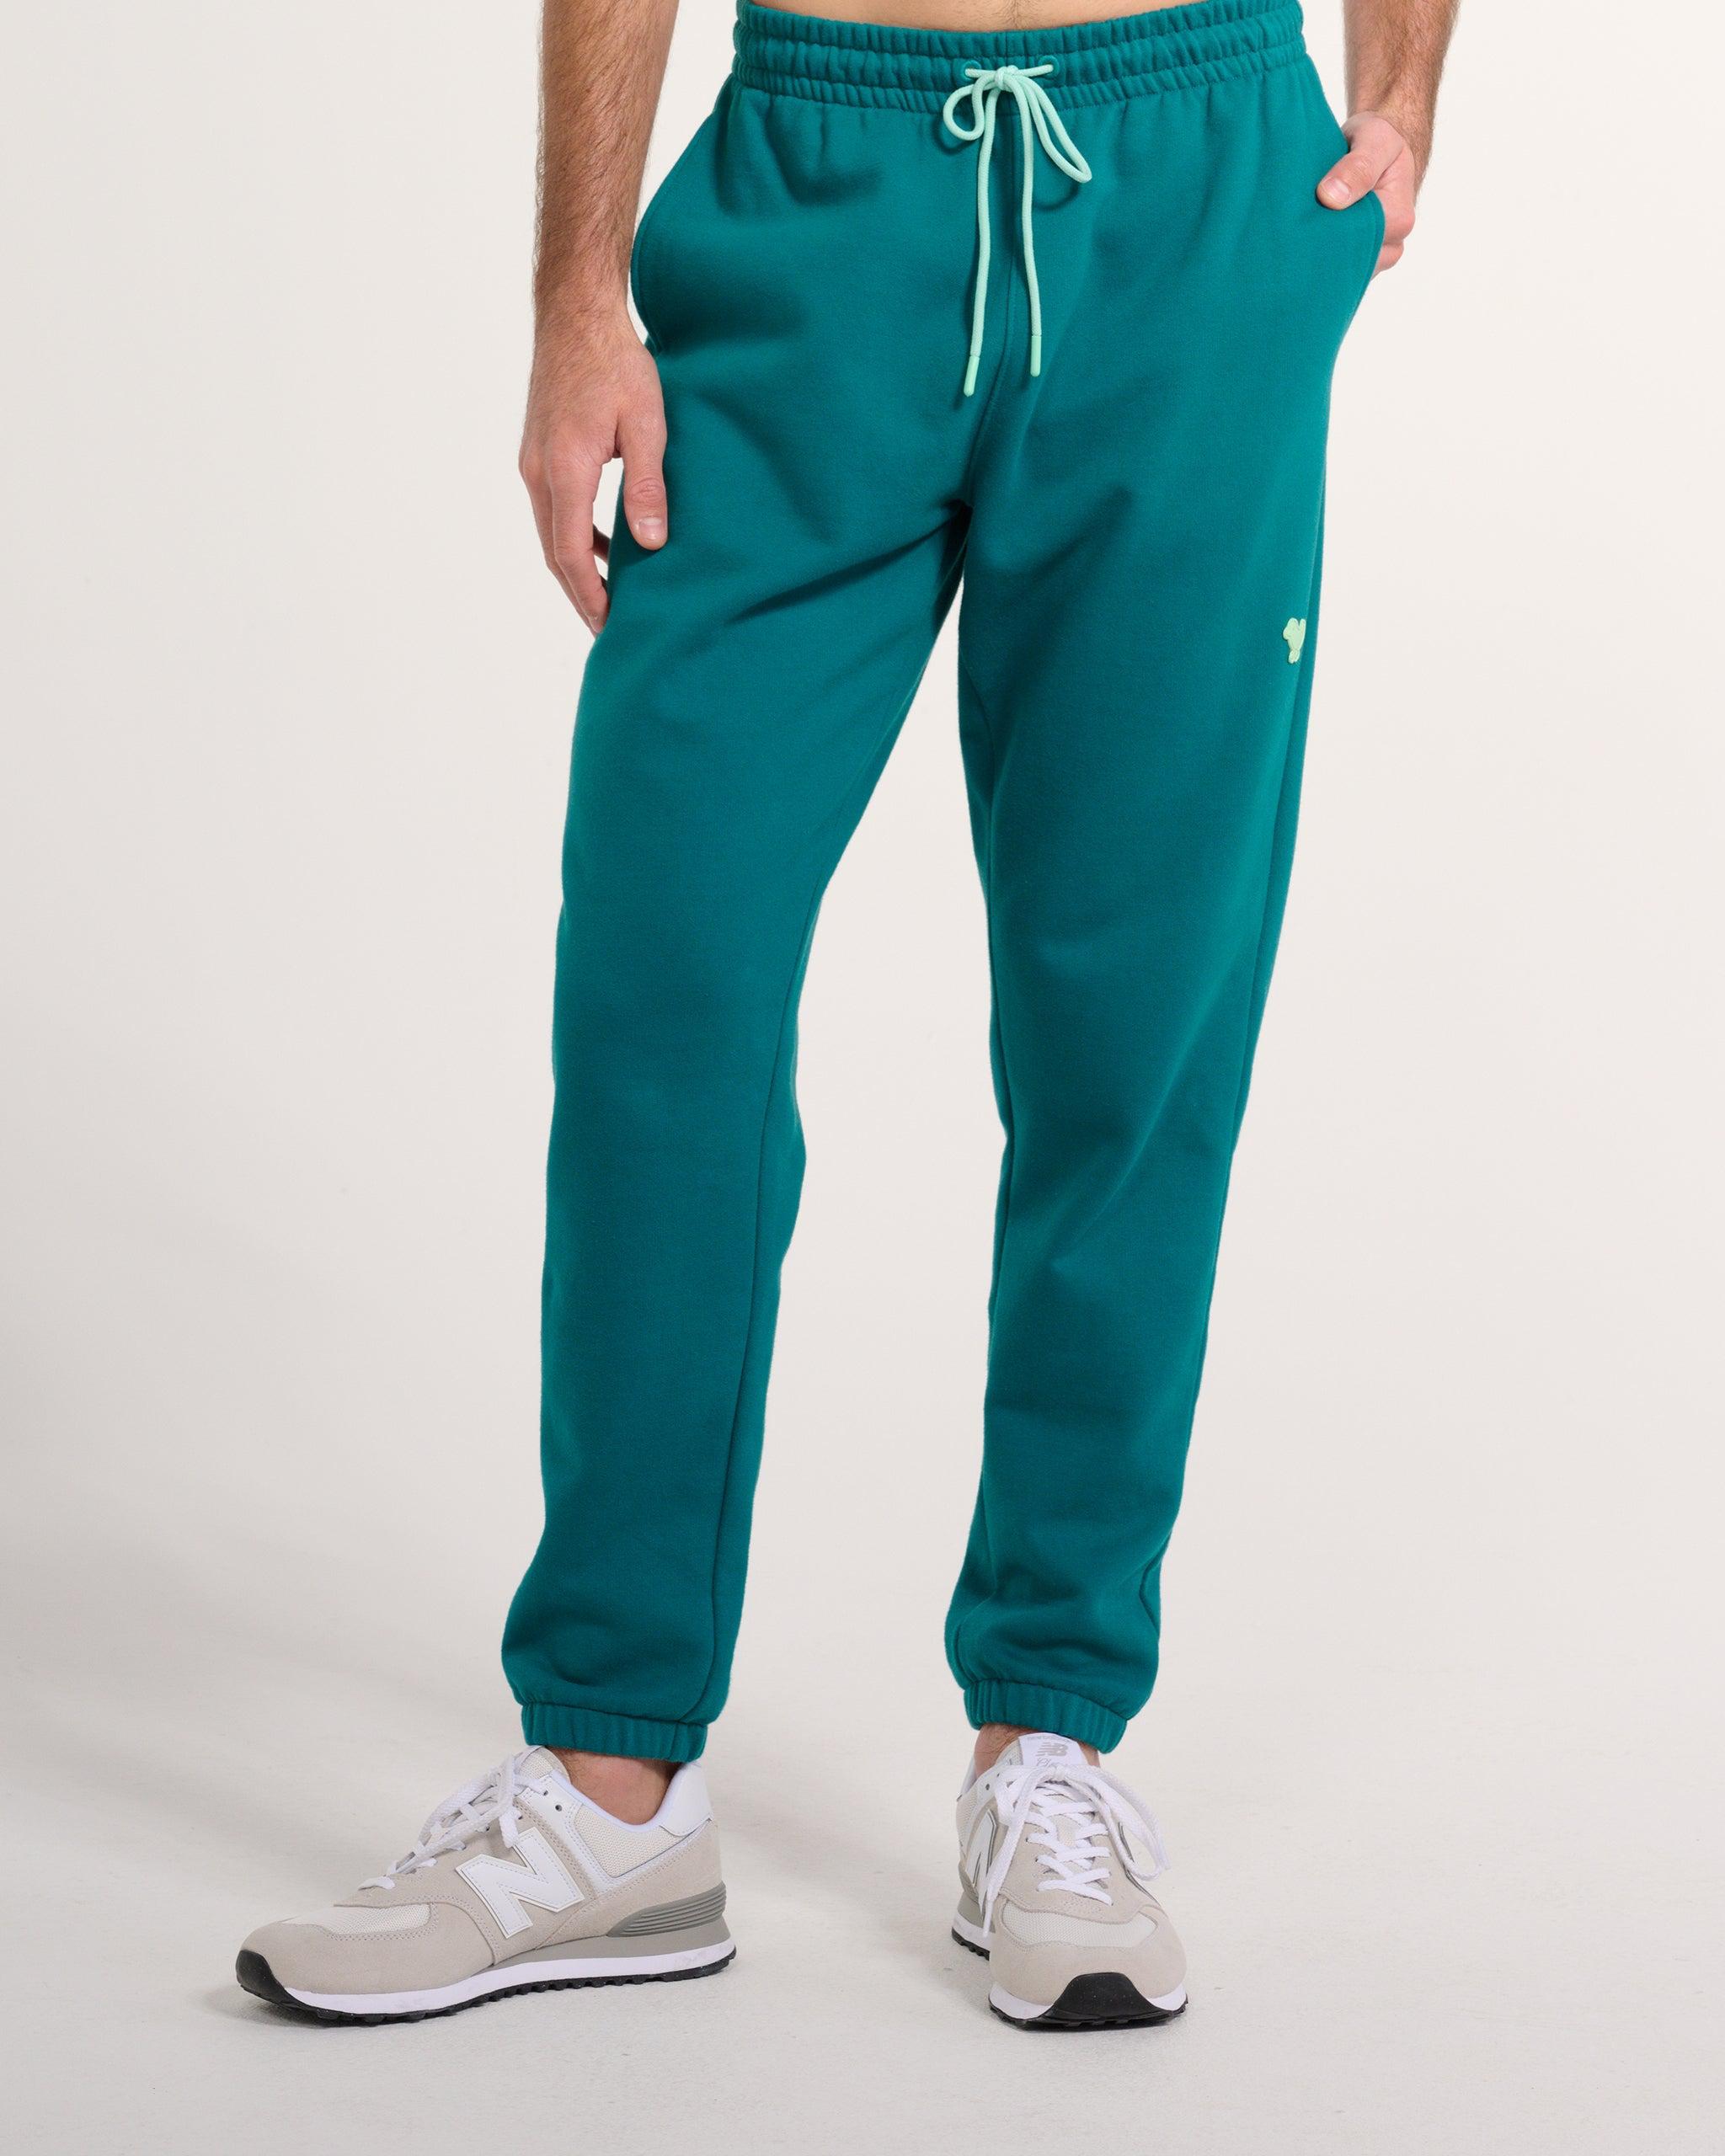 Valiente jogpants 7/8 pants in green buy online - Golf House